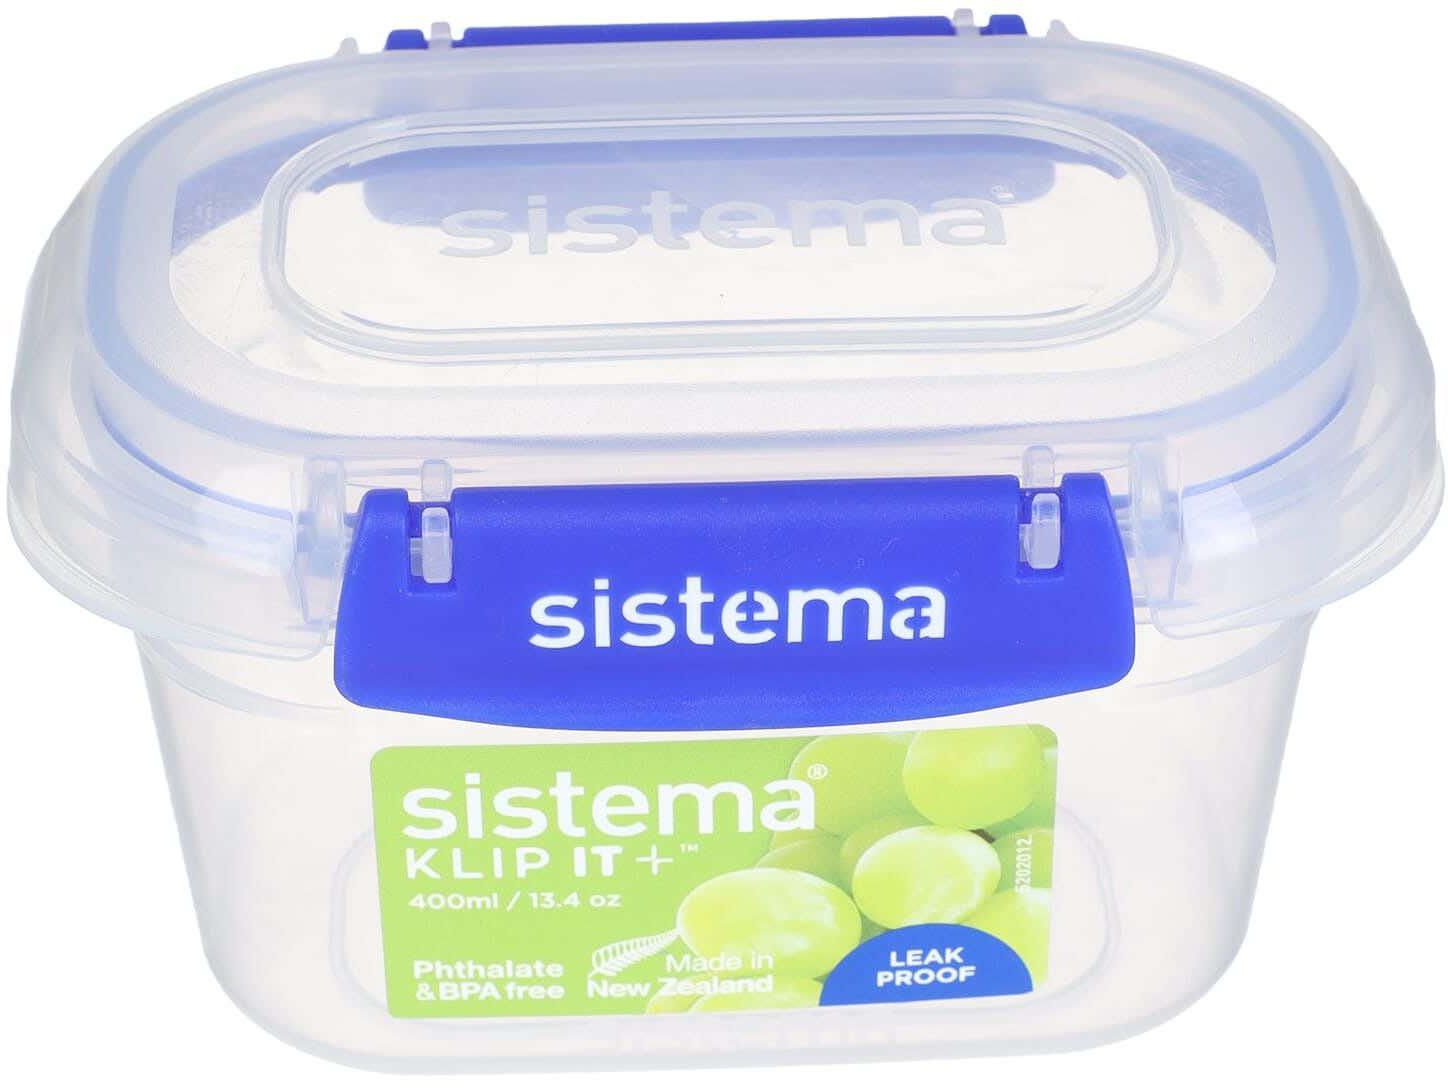 احصل على حافظة طعام بلاستيك بغطاء كليبس سيستيما، 400 مل - ازرق مع أفضل العروض | رنين.كوم